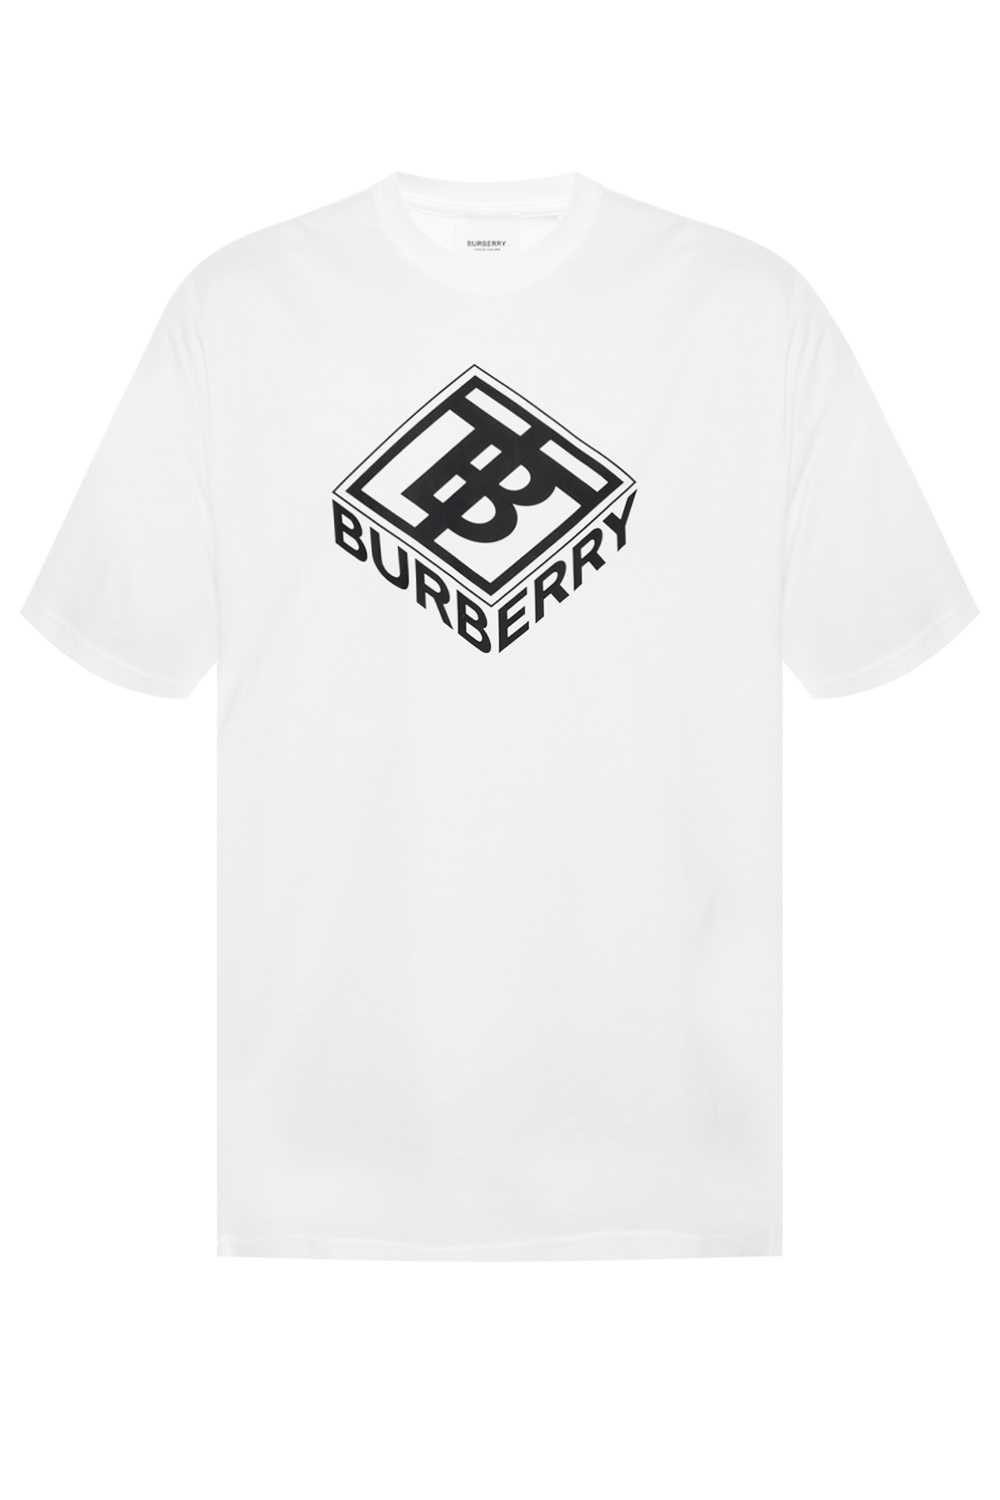 burberry 4xl shirts